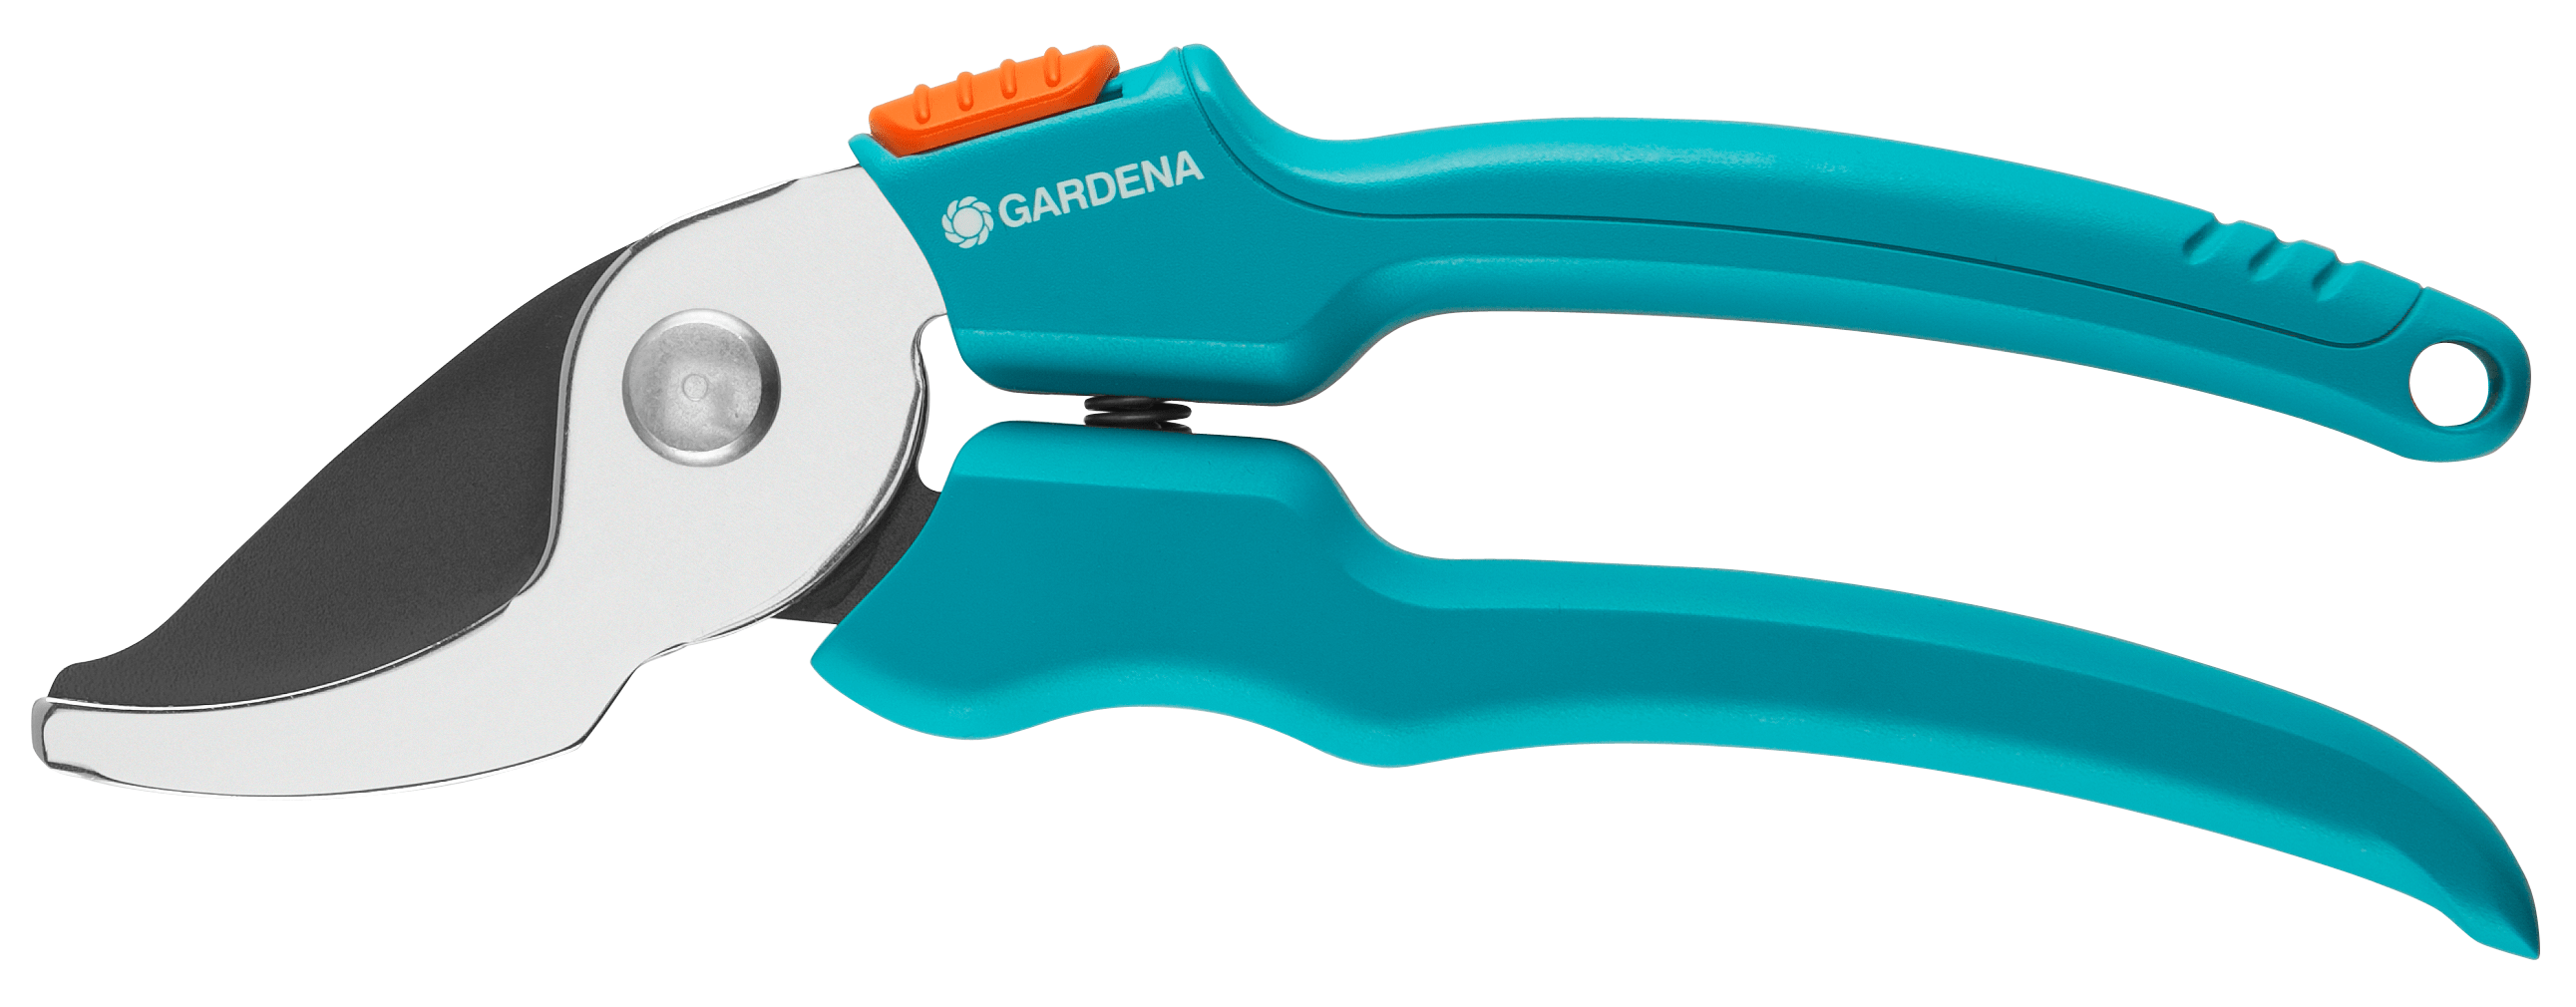 Gardena Classic Secateurs Precision Ground Blade Blue 20mm 